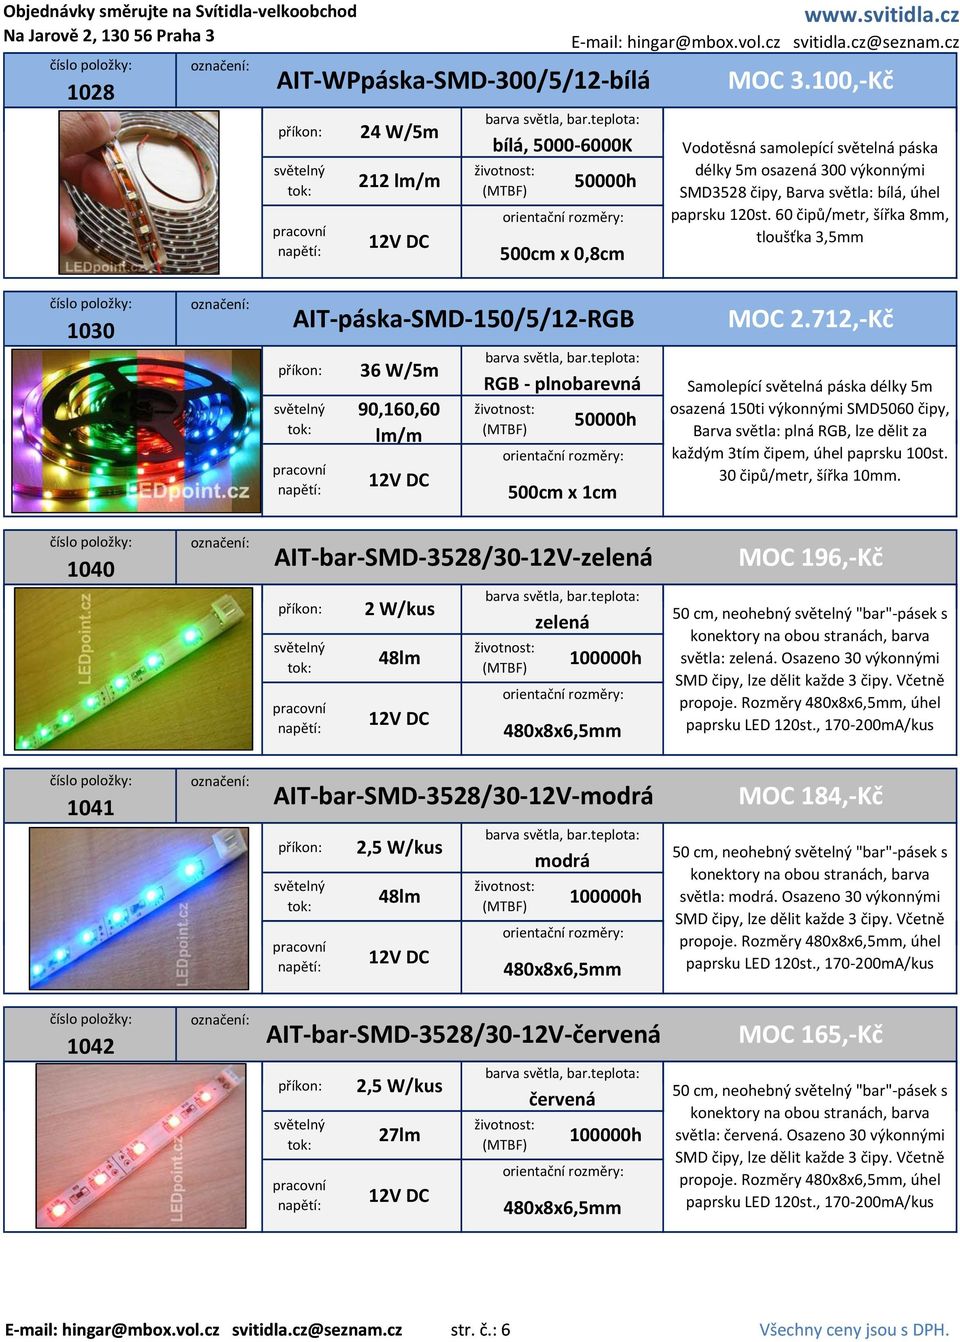 712, Kč osazená 150ti výkonnými SMD5060 čipy, Barva světla: plná RGB, lze dělit za každým 3tím čipem, úhel paprsku 100st. 30 čipů/metr, šířka 10mm.